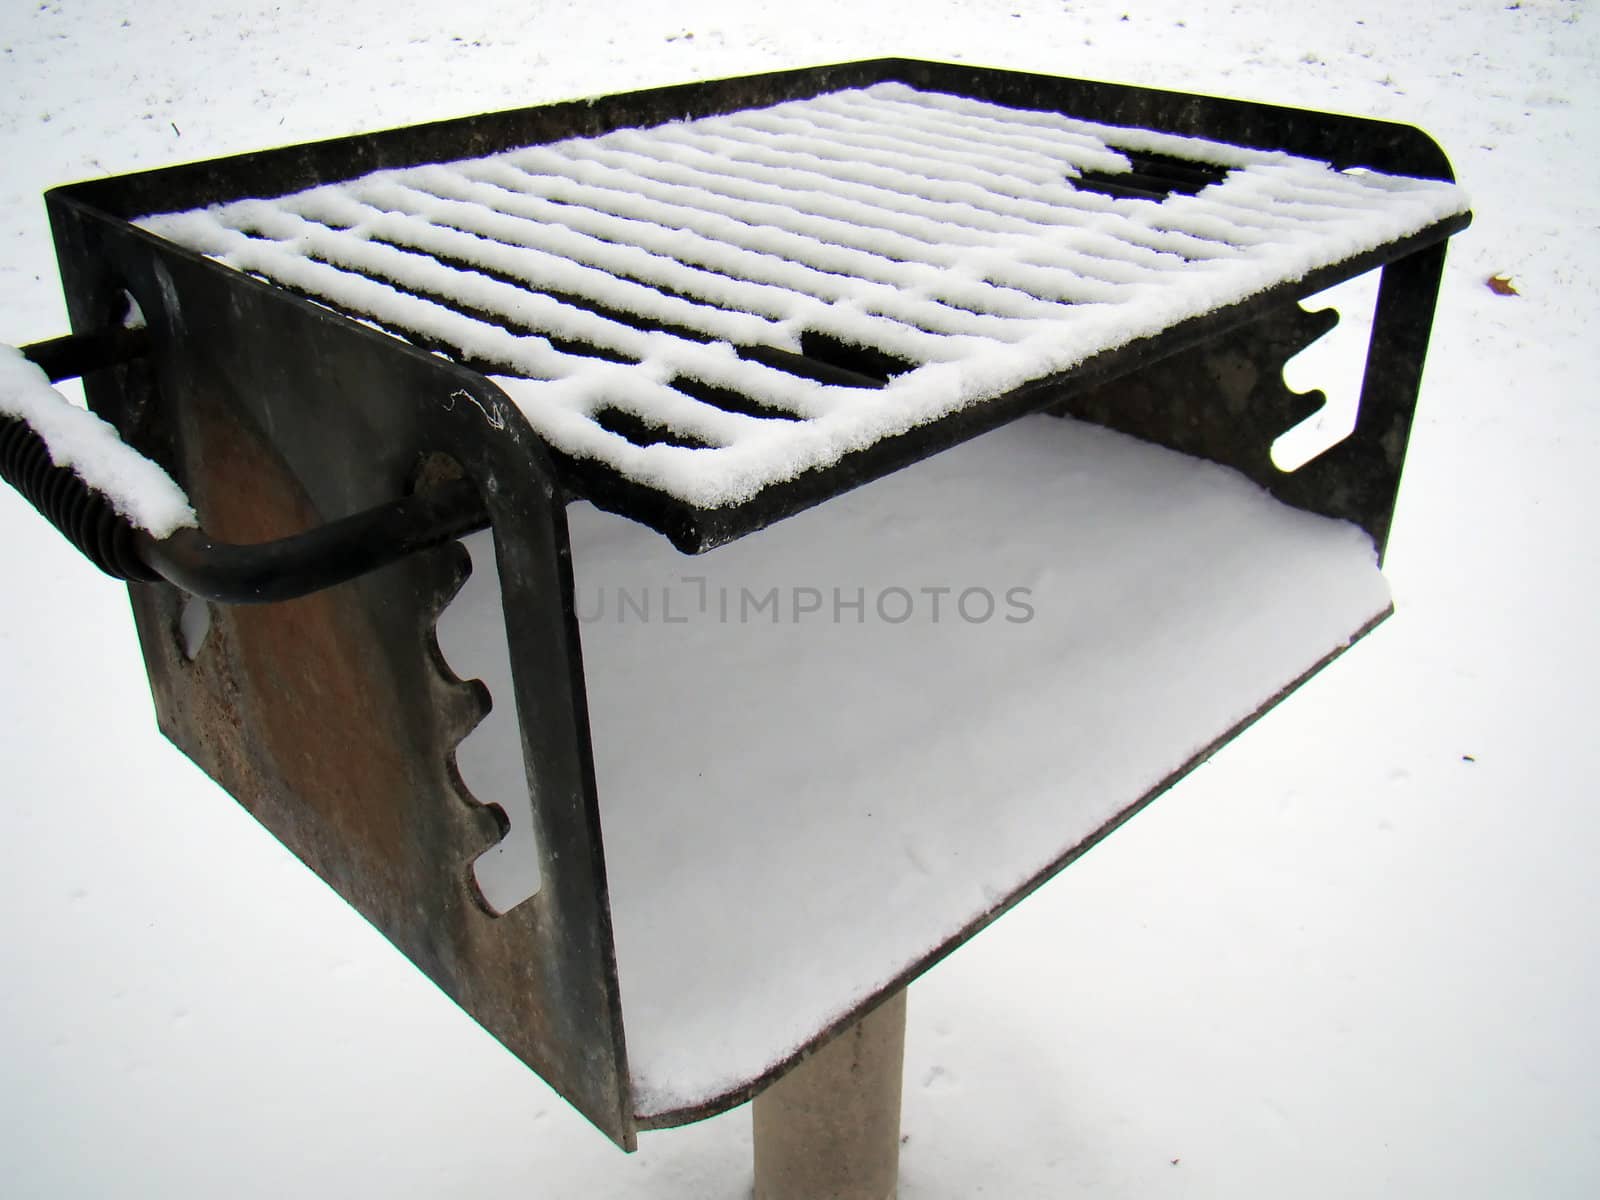 snowy grill by amandaols